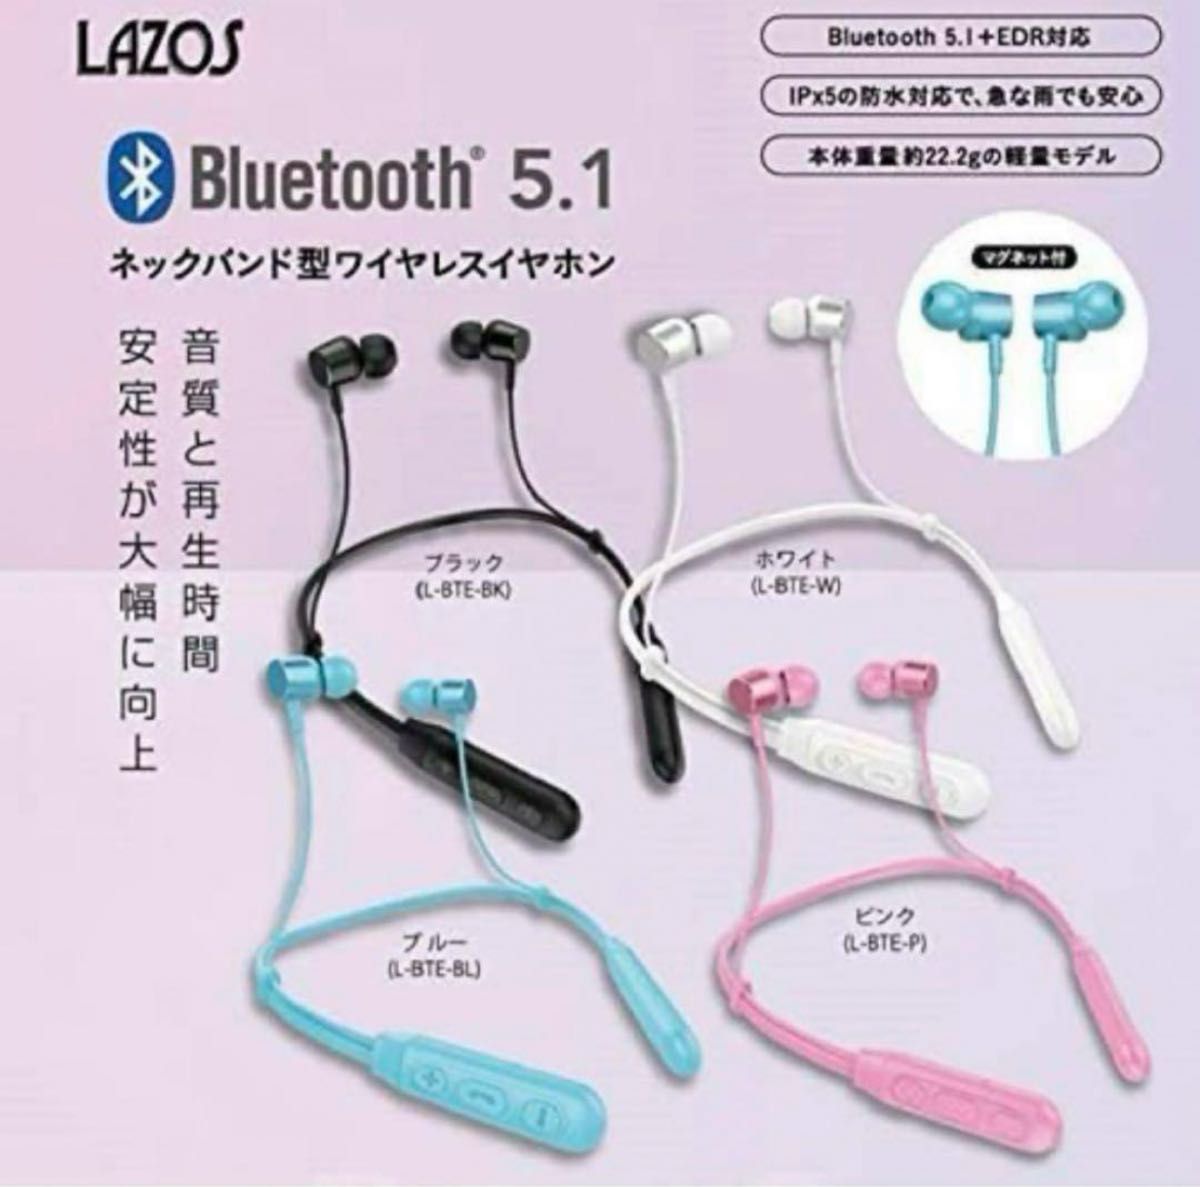 Lazos ネックバンド型 ワイヤレスイヤホン Bluetooth 5.1 防水 IPx5